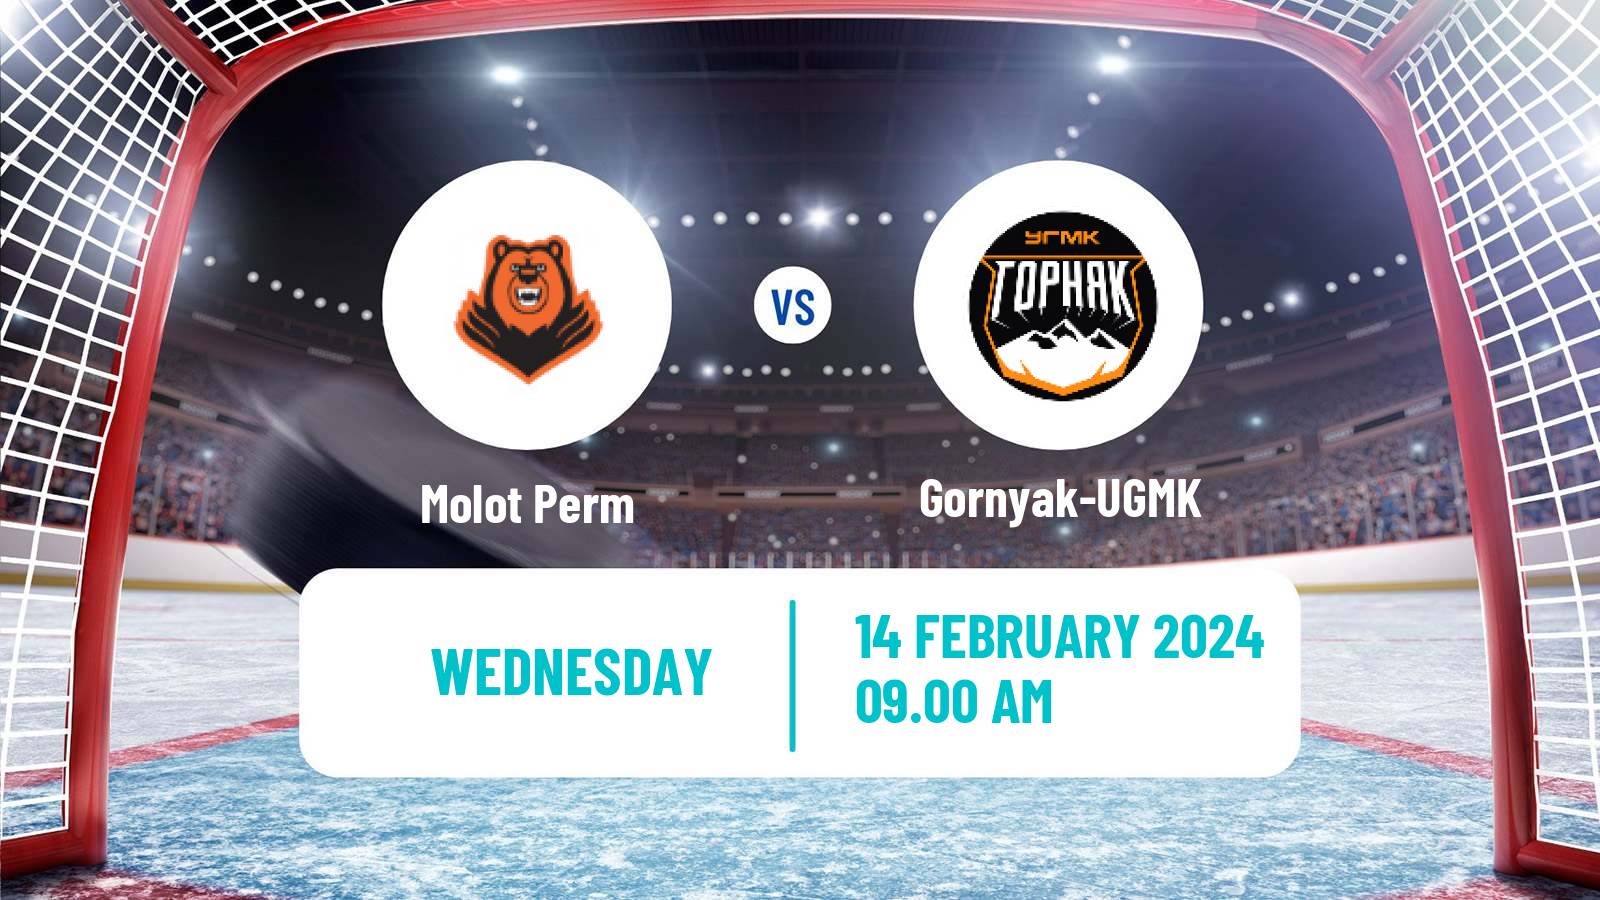 Hockey VHL Molot Perm - Gornyak-UGMK